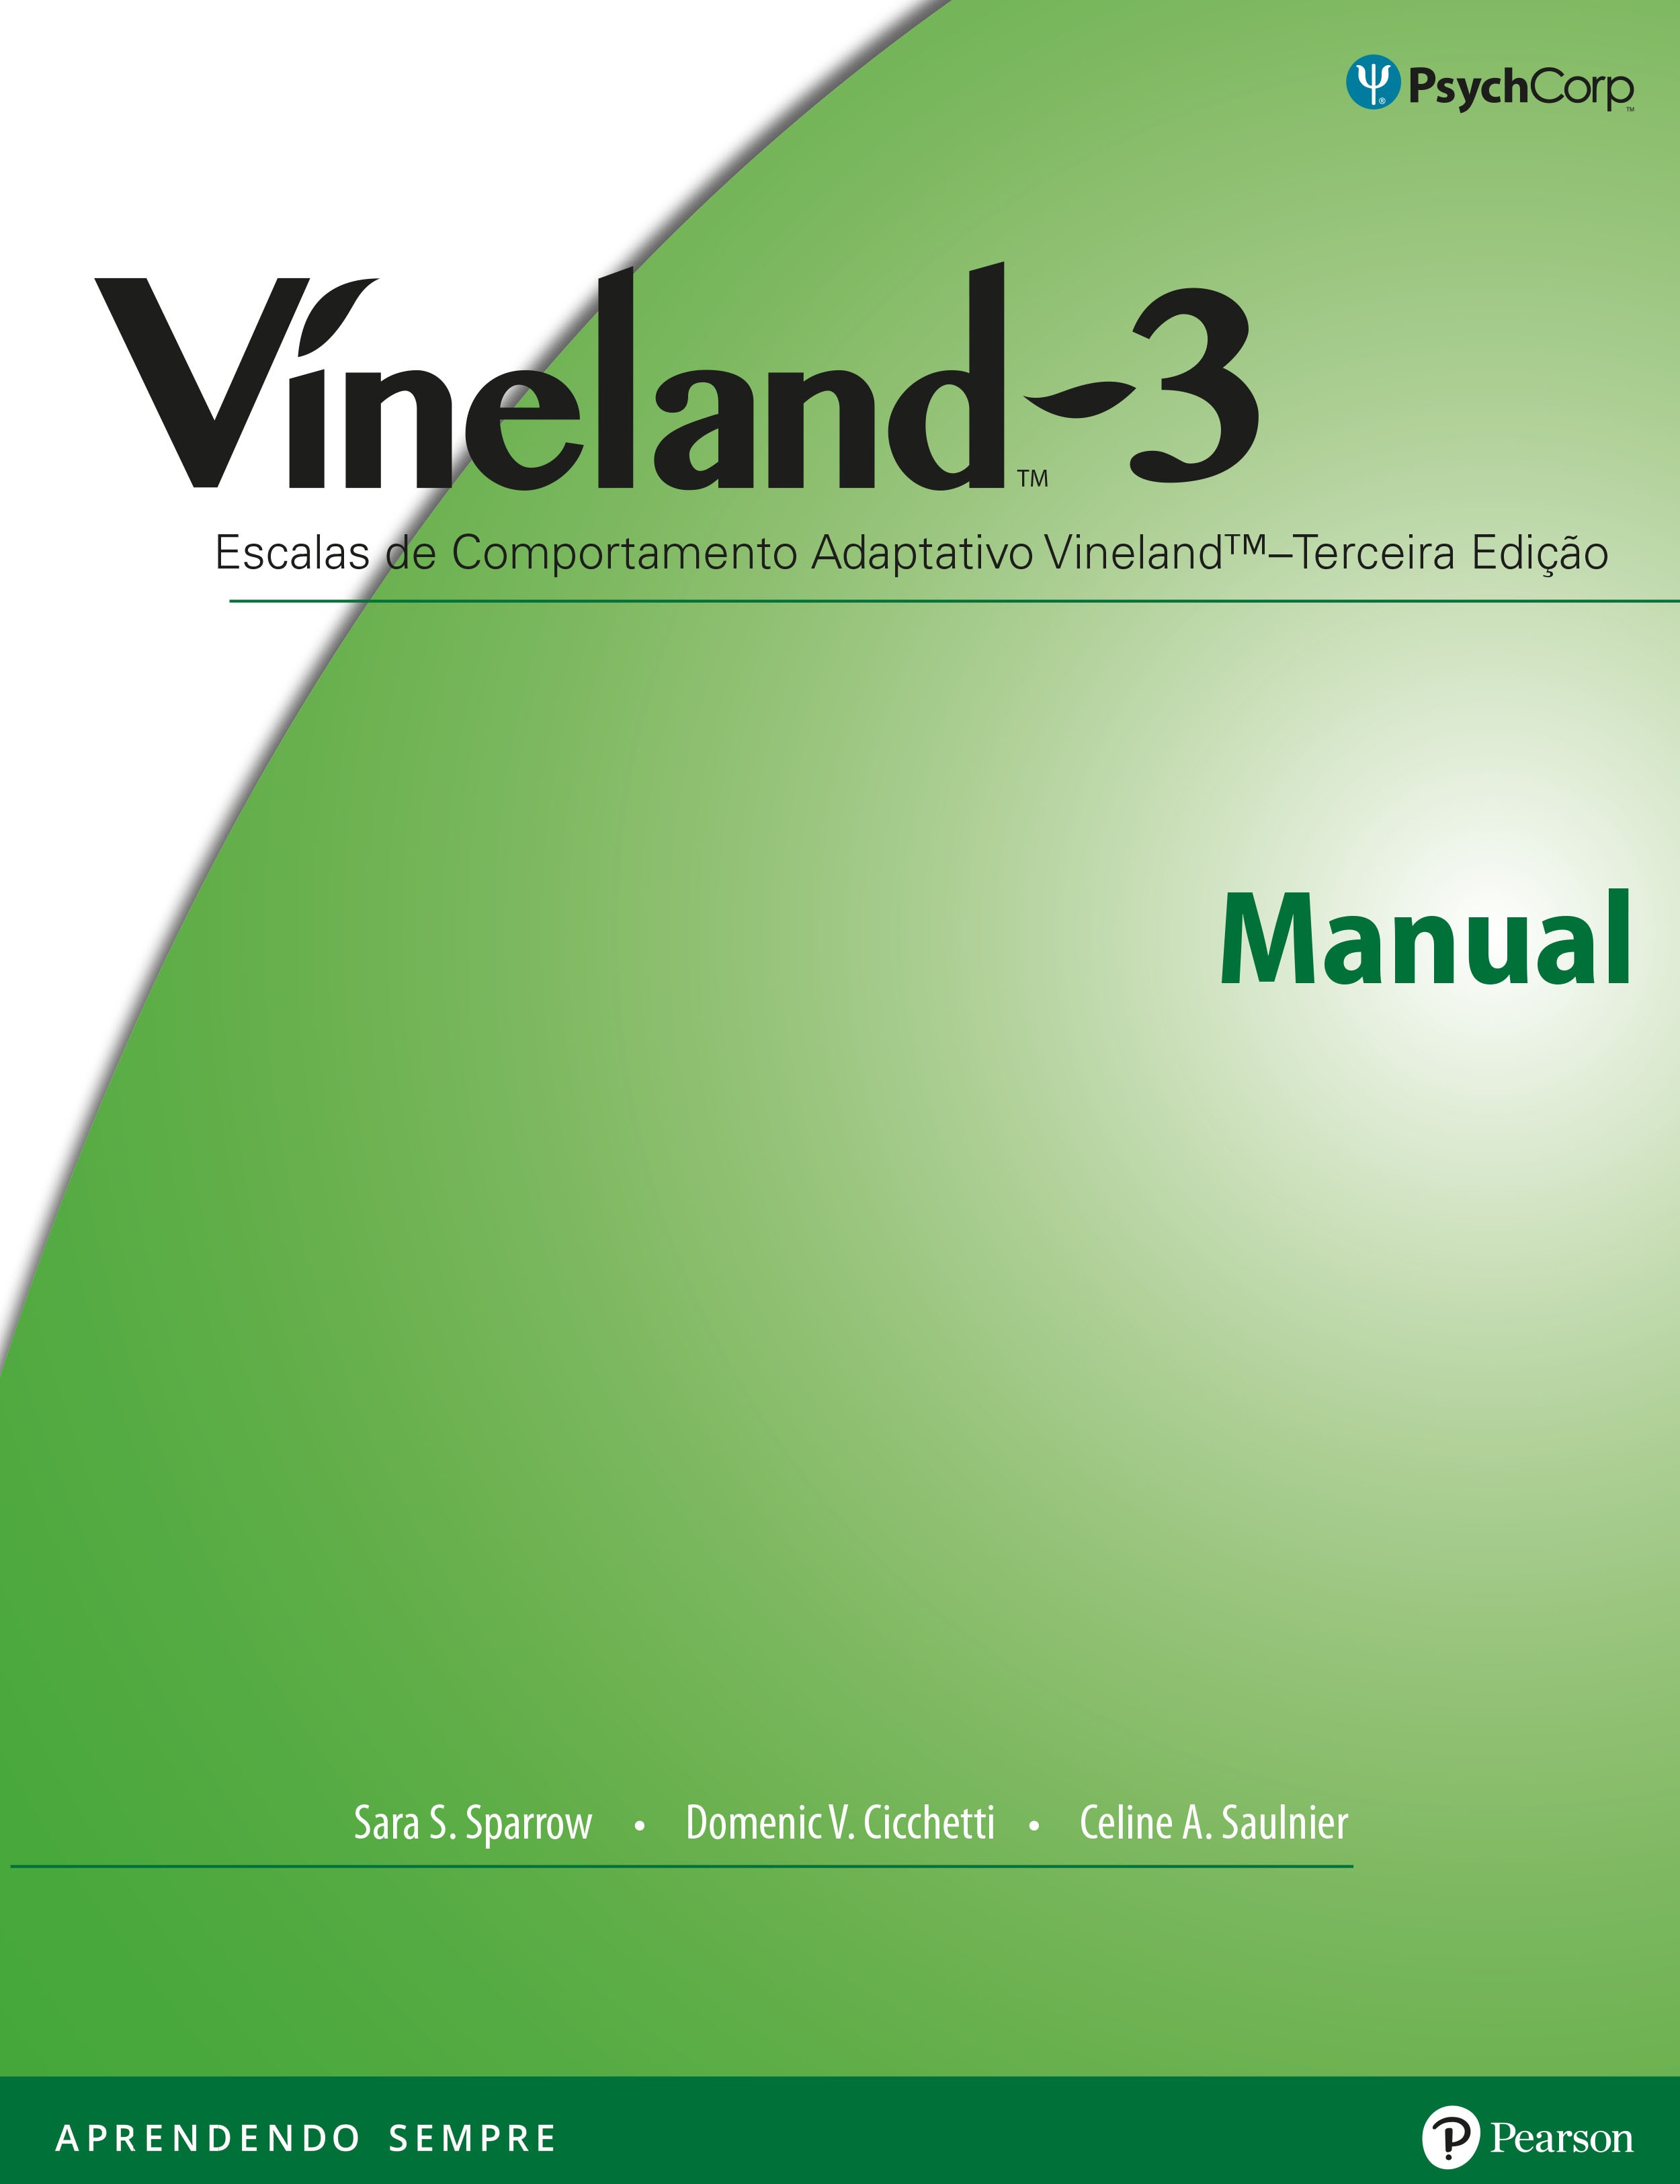 Víneland-3 (Escalas de Comportamento Adaptativo Víneland – Formulário de Entrevista de domínios)